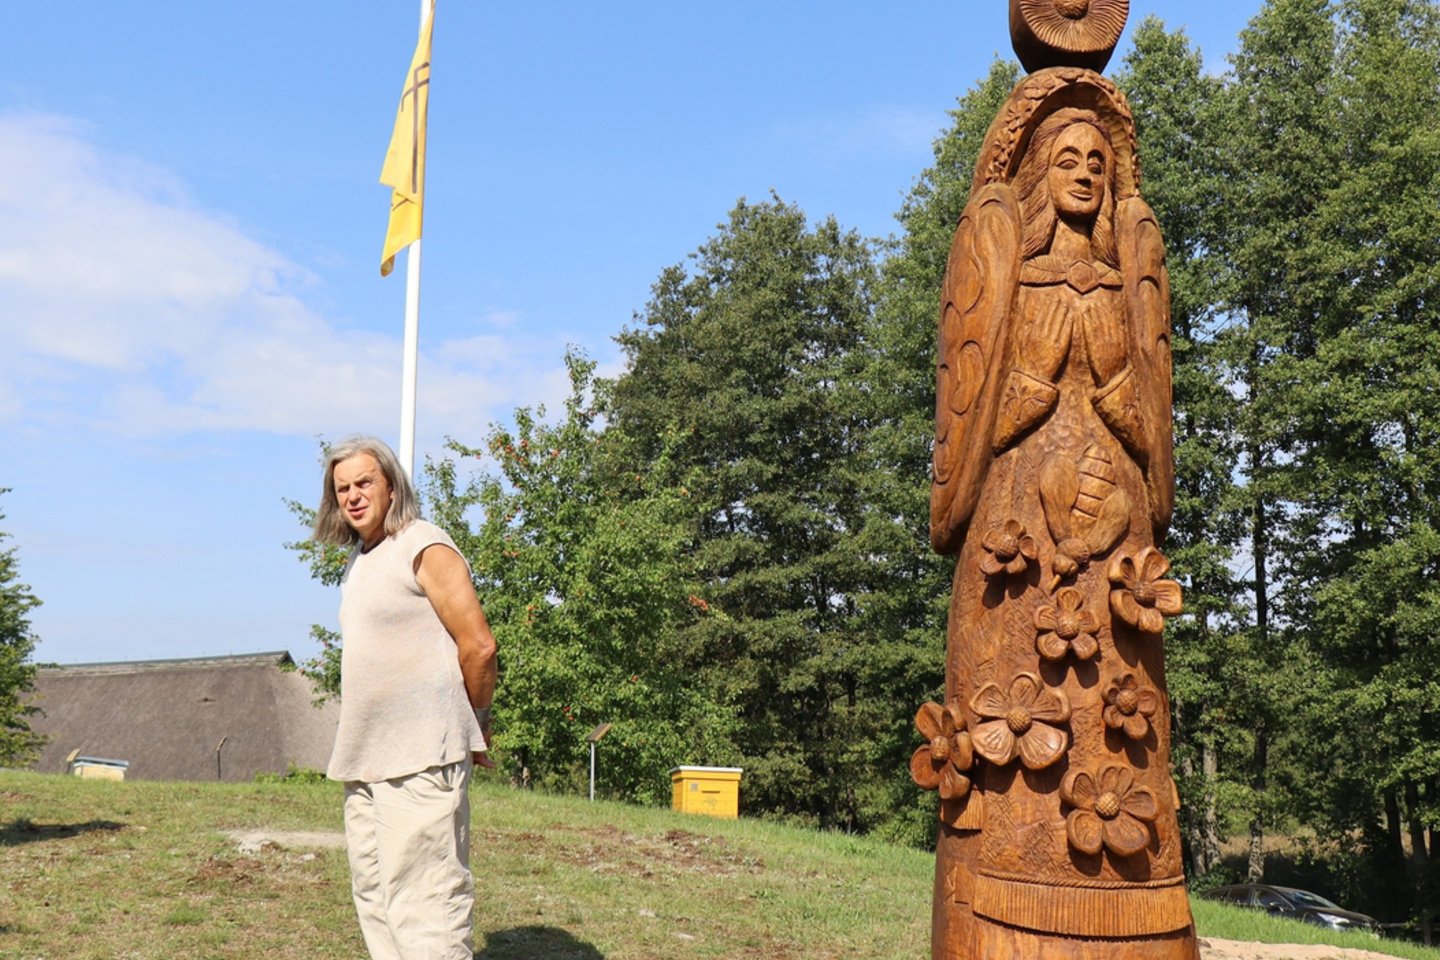 Rugpjūčio 26 d. senajame Ignalinos rajono Stripeikių kaime, Bitininkystės muziejuje, pasidžiaugta respublikinio skulptorių plenero dalyvių puikiais kūriniais, kurie papuošė ir dar labiau įprasmino šį unikalų ramybės, poilsio ir pažinimo kampelį